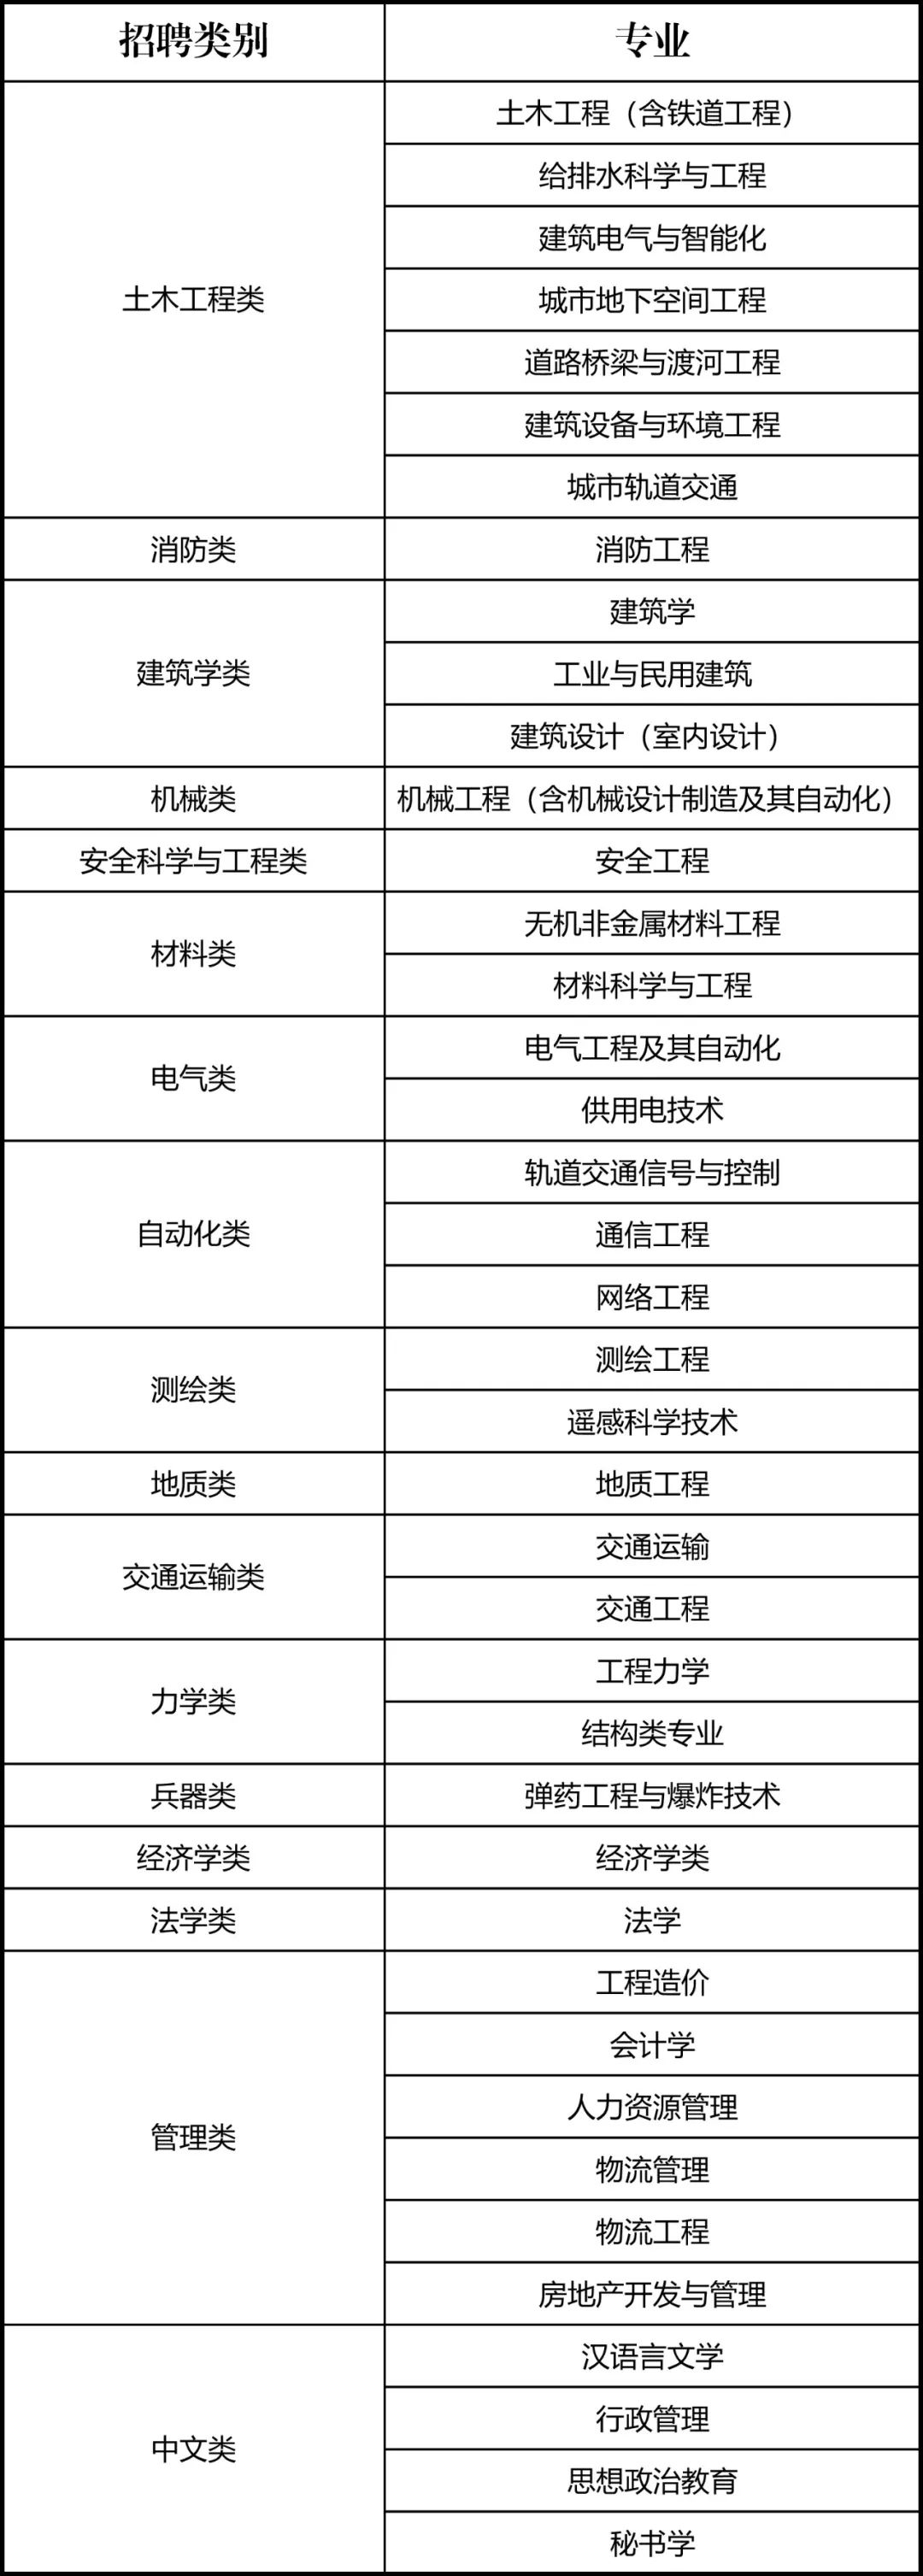 【内有福利】中国中铁二局2020届校园招聘